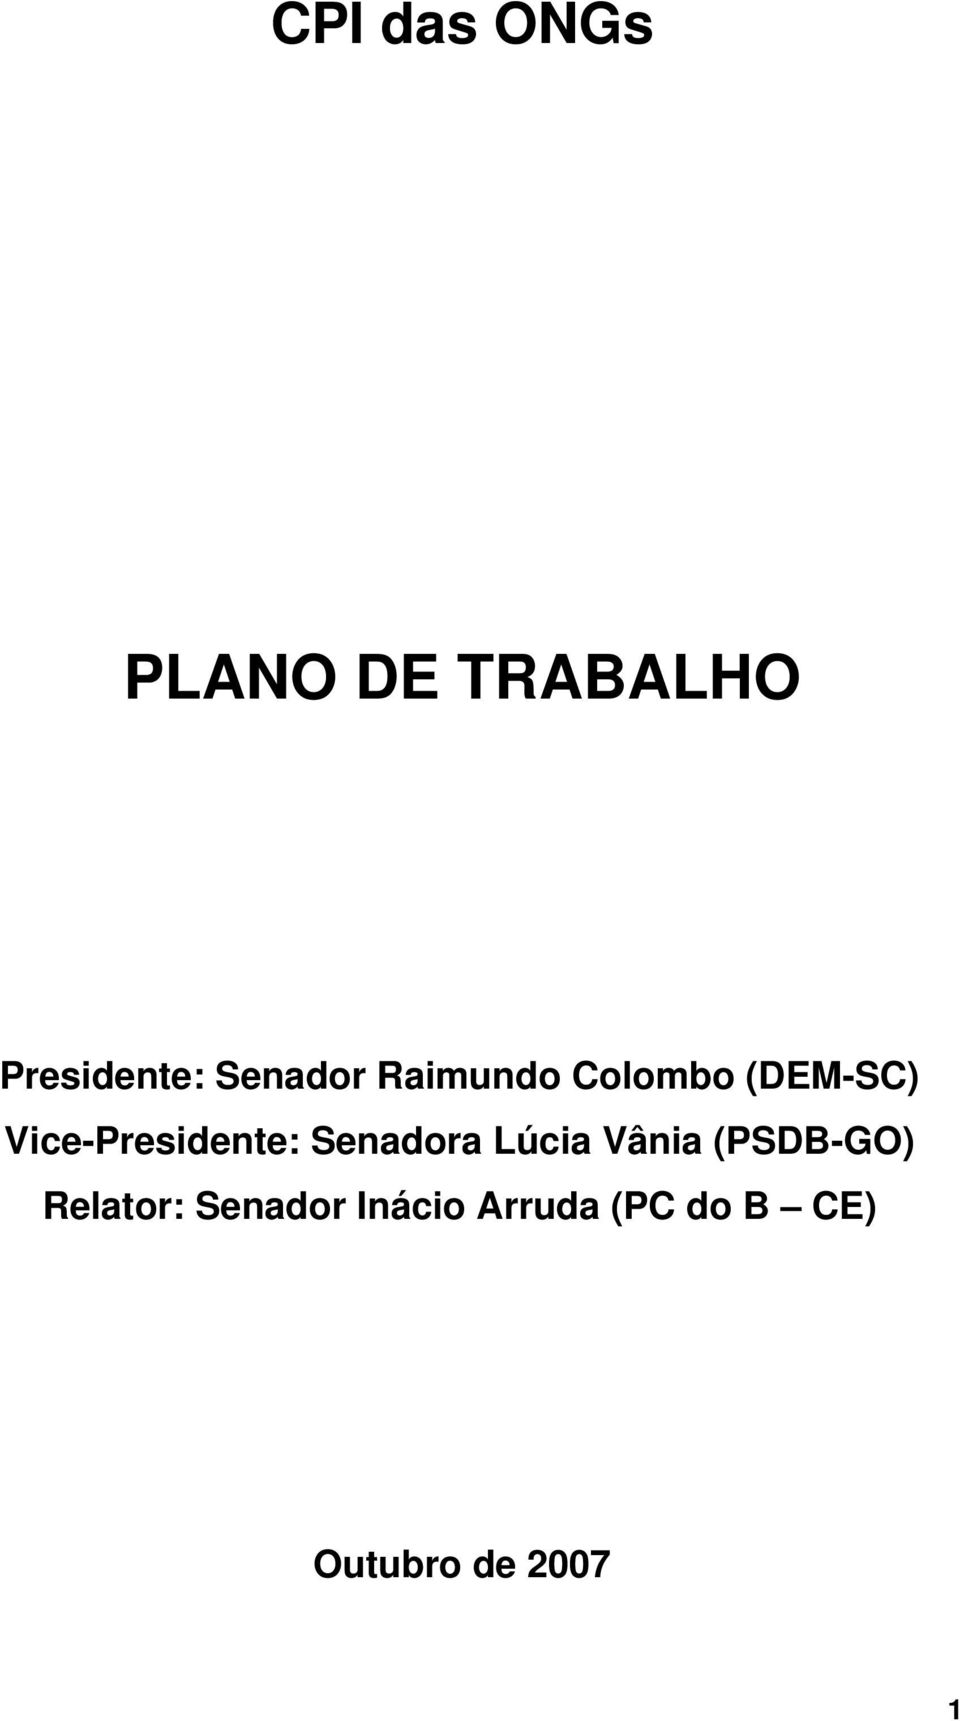 Vice-Presidente: Senadora Lúcia Vânia